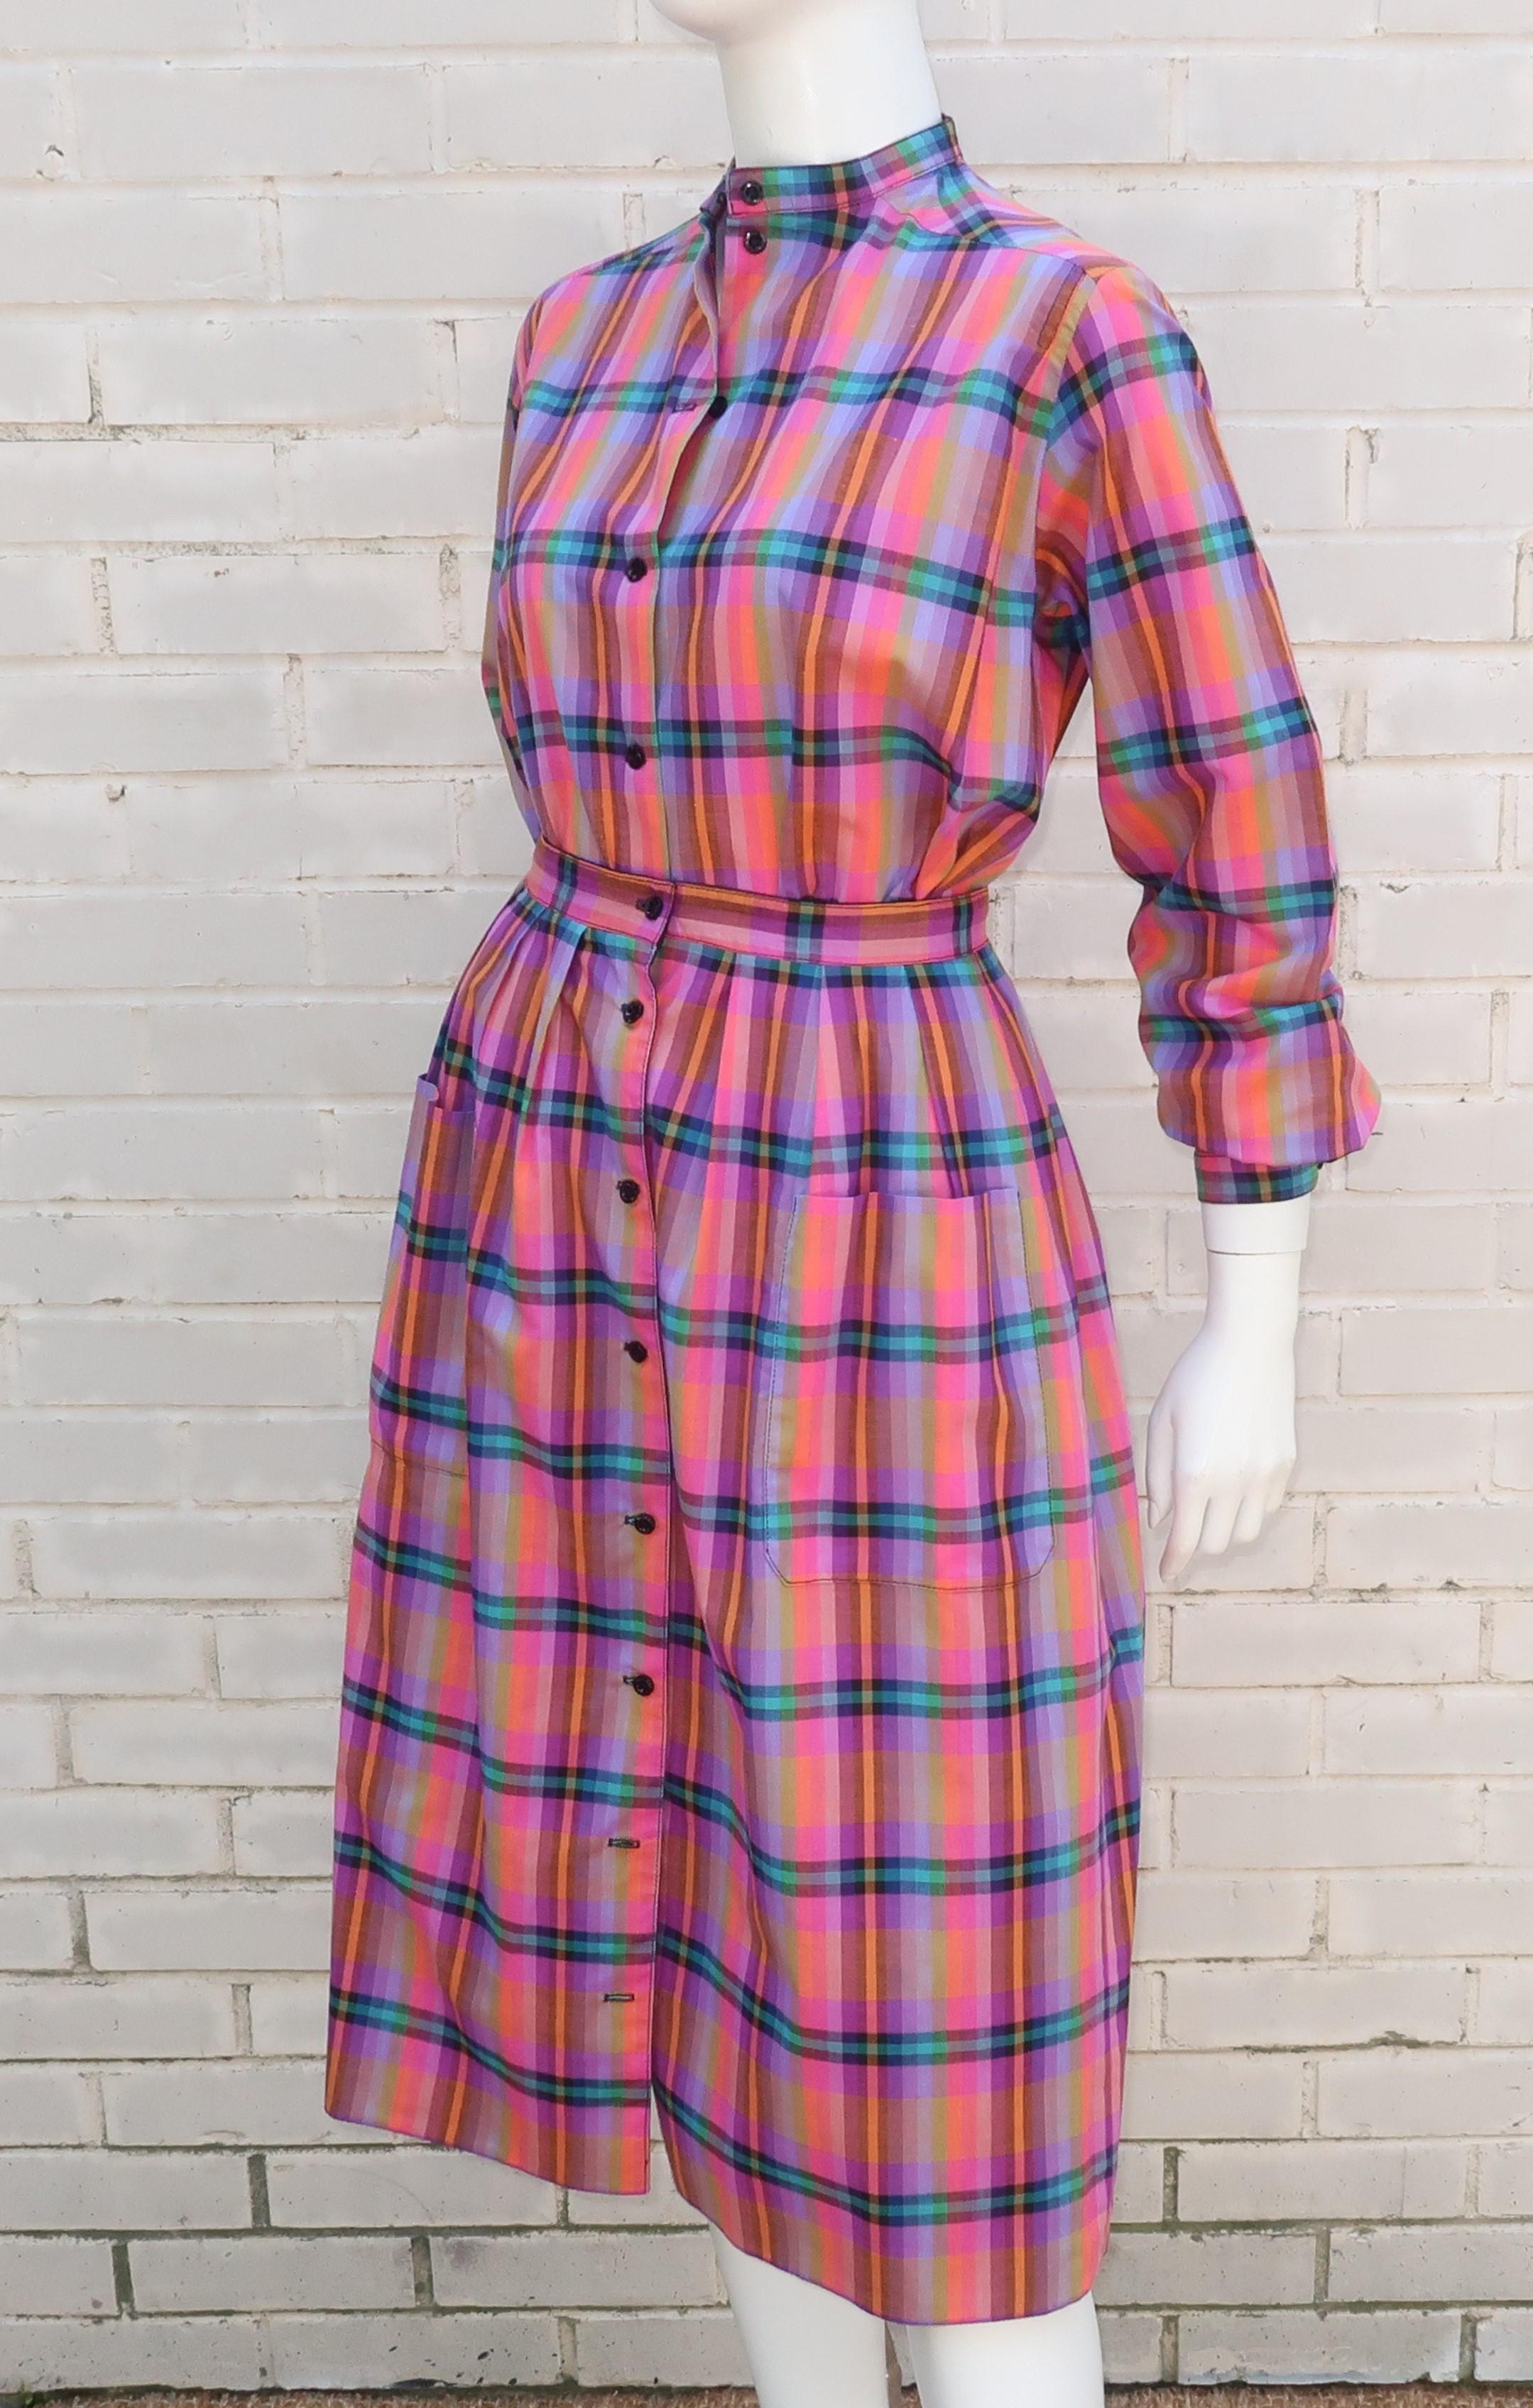 Women's Jaeger Plaid Cotton Top & Reversible Skirt Dress Ensemble, 1970's